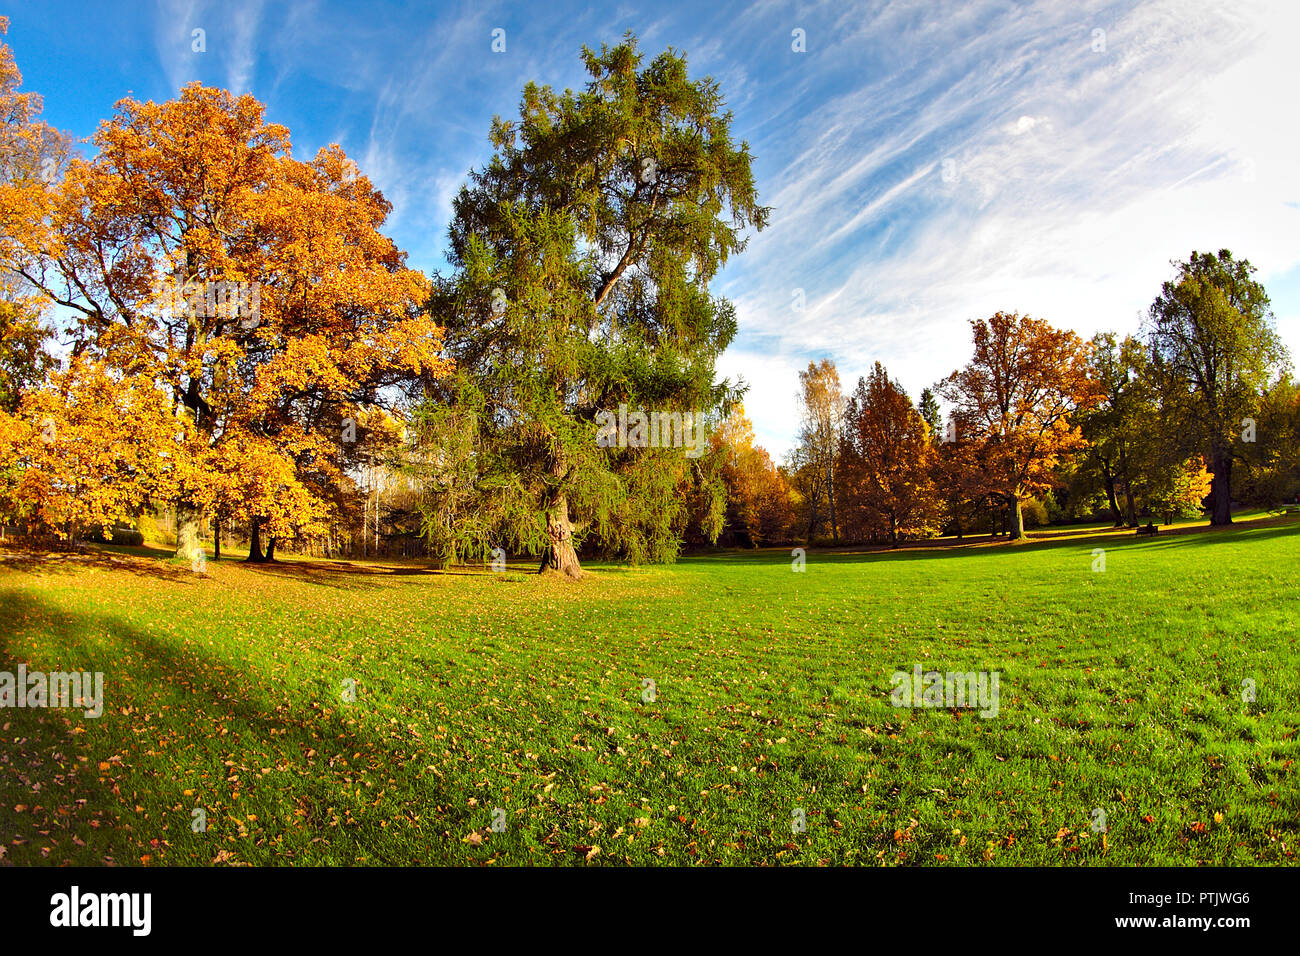 Der Herbst ist hier. Das Wetter noch warm und die Sonne scheint aber Bäume sind die schönen goldenen Farben Stockfoto